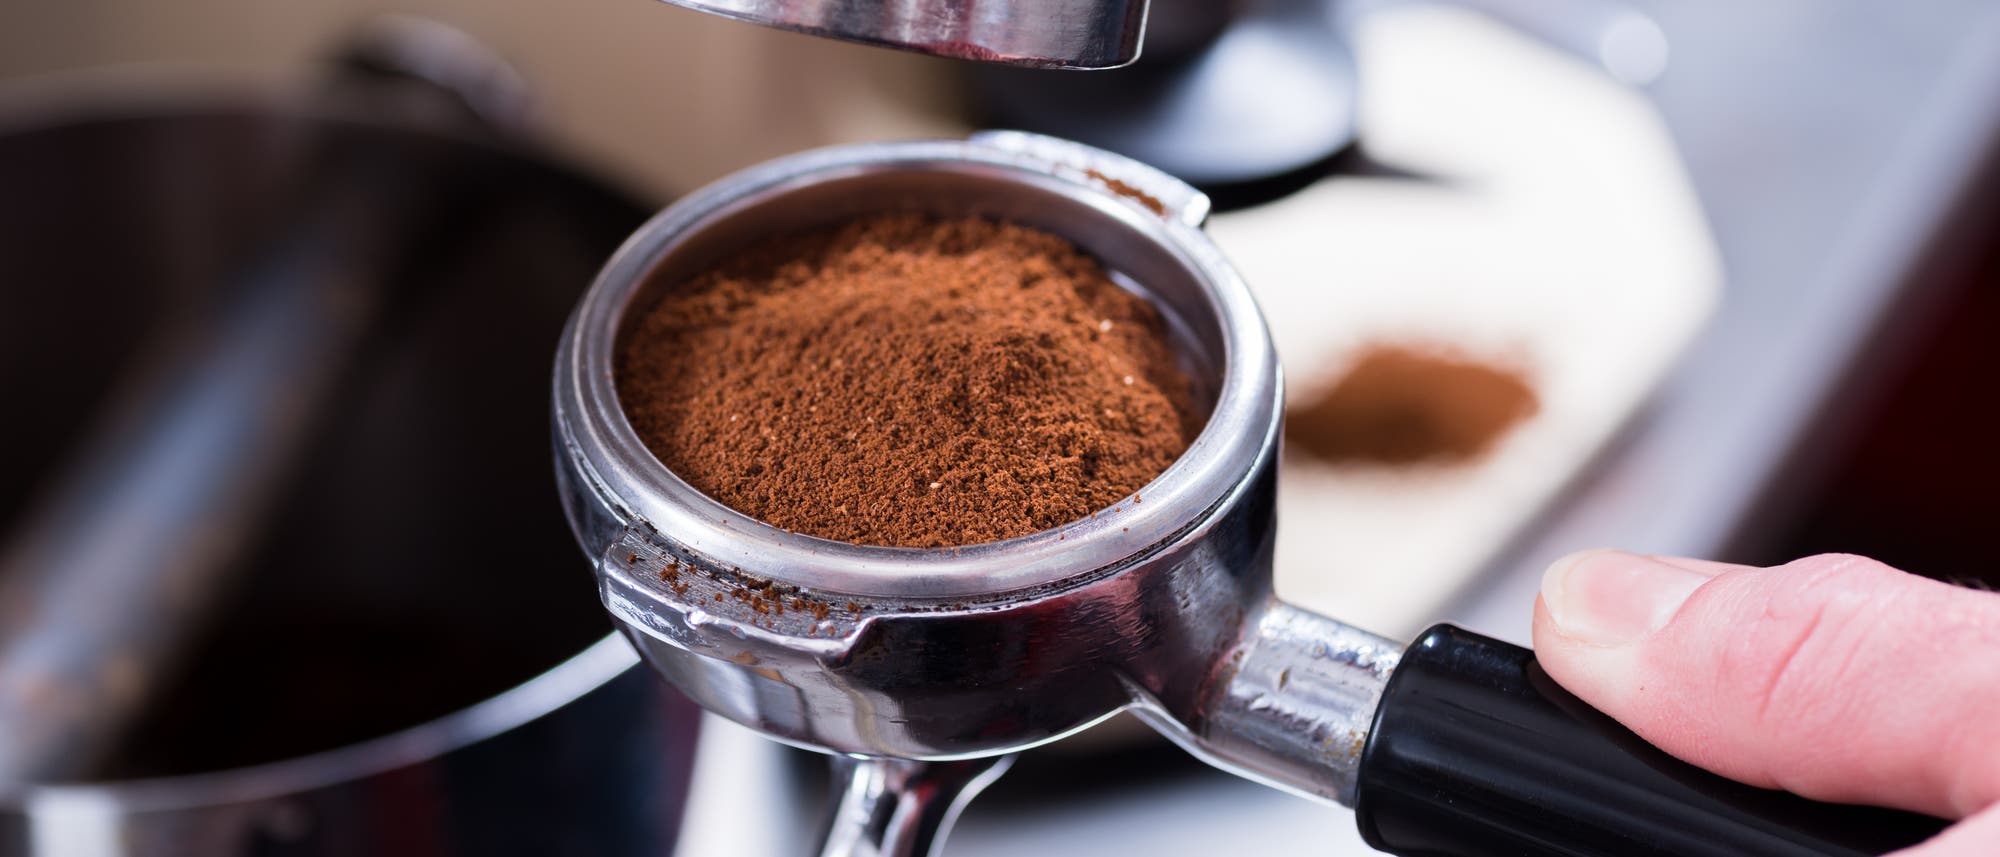 Kaffeemehl im Sieb einer Espressomaschine